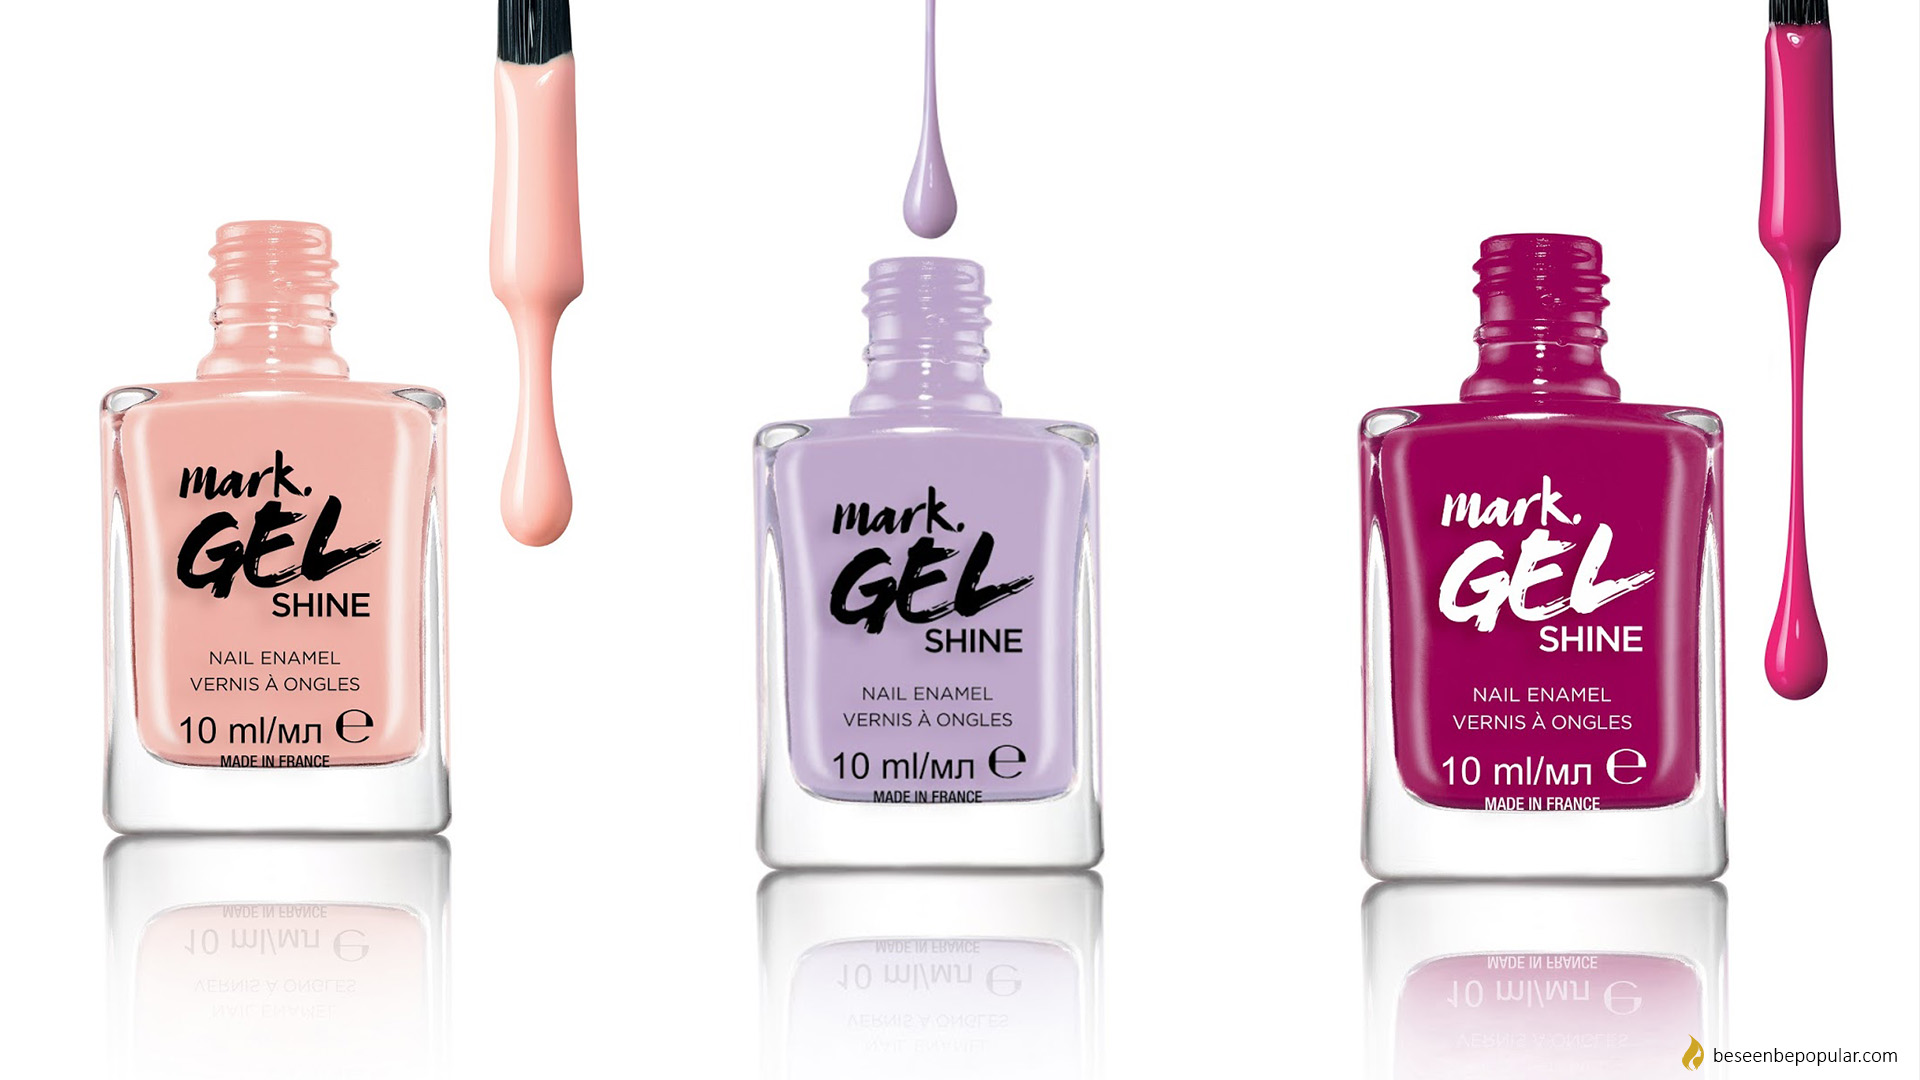 New irresistible shades of Avon mark. nail polish